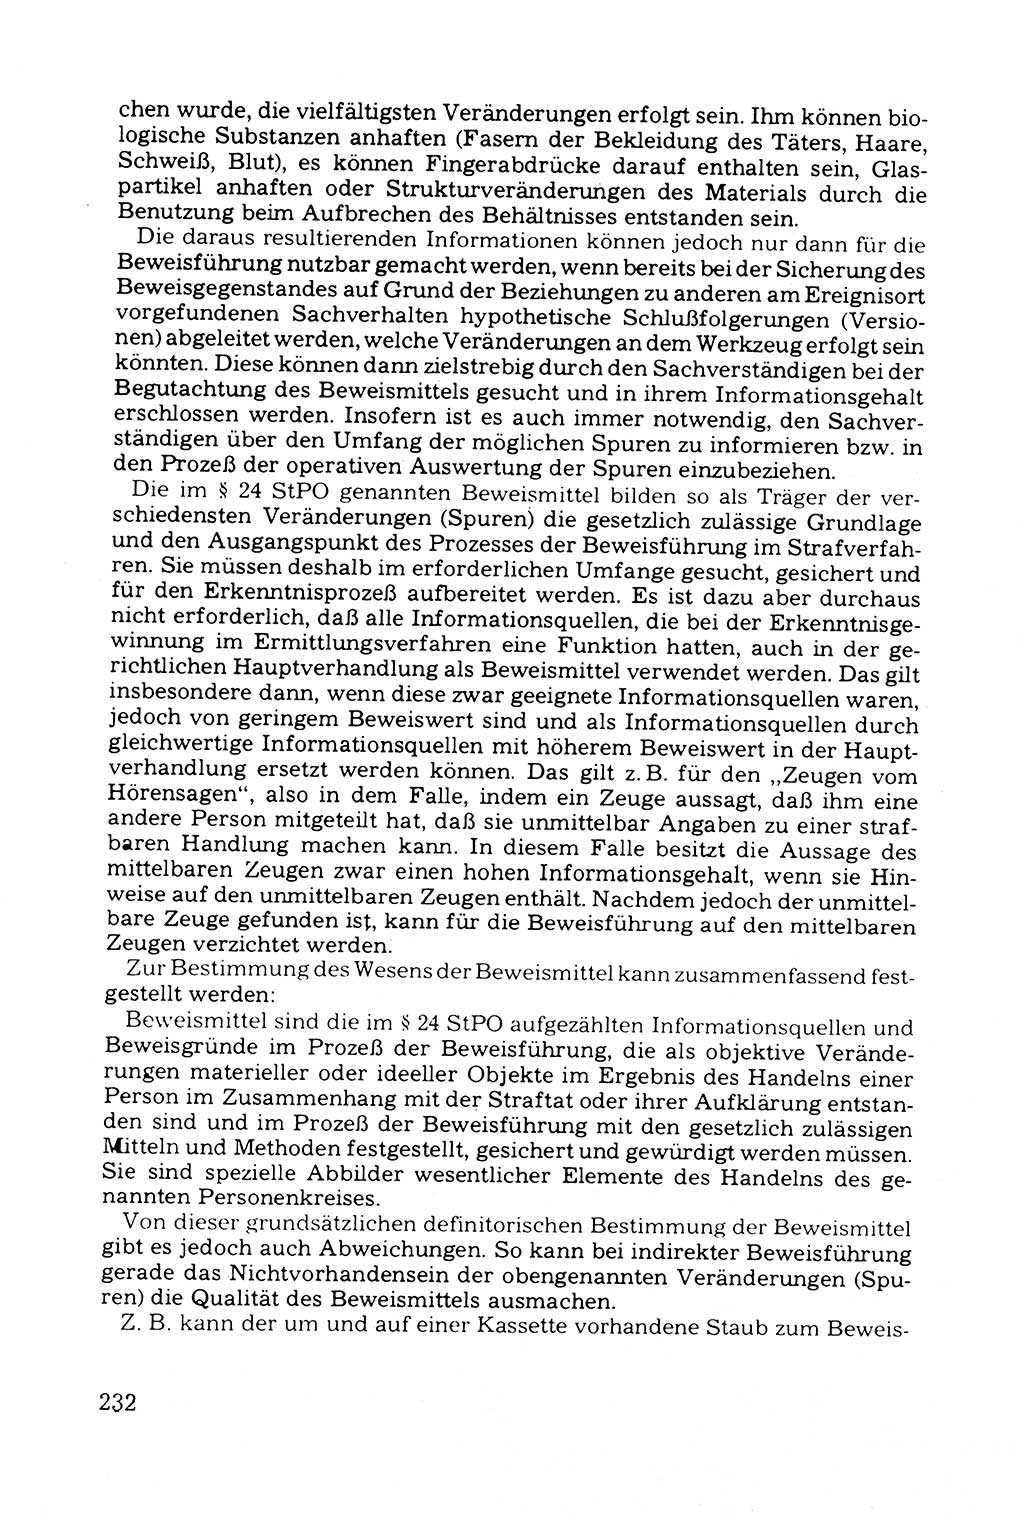 Grundfragen der Beweisführung im Ermittlungsverfahren [Deutsche Demokratische Republik (DDR)] 1980, Seite 232 (Bws.-Fhrg. EV DDR 1980, S. 232)